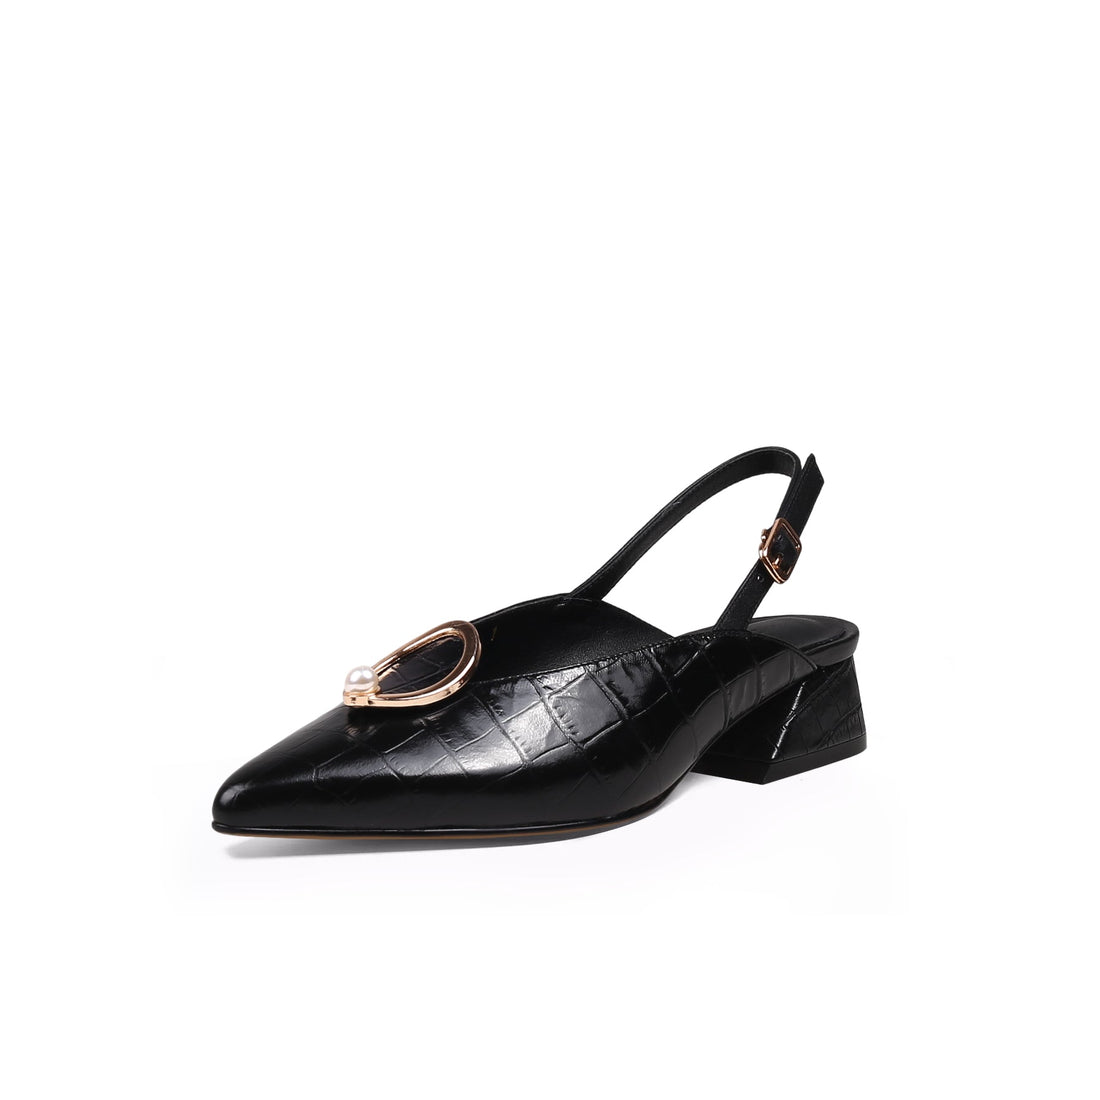 Moon Patent Black Sandals - 0cm